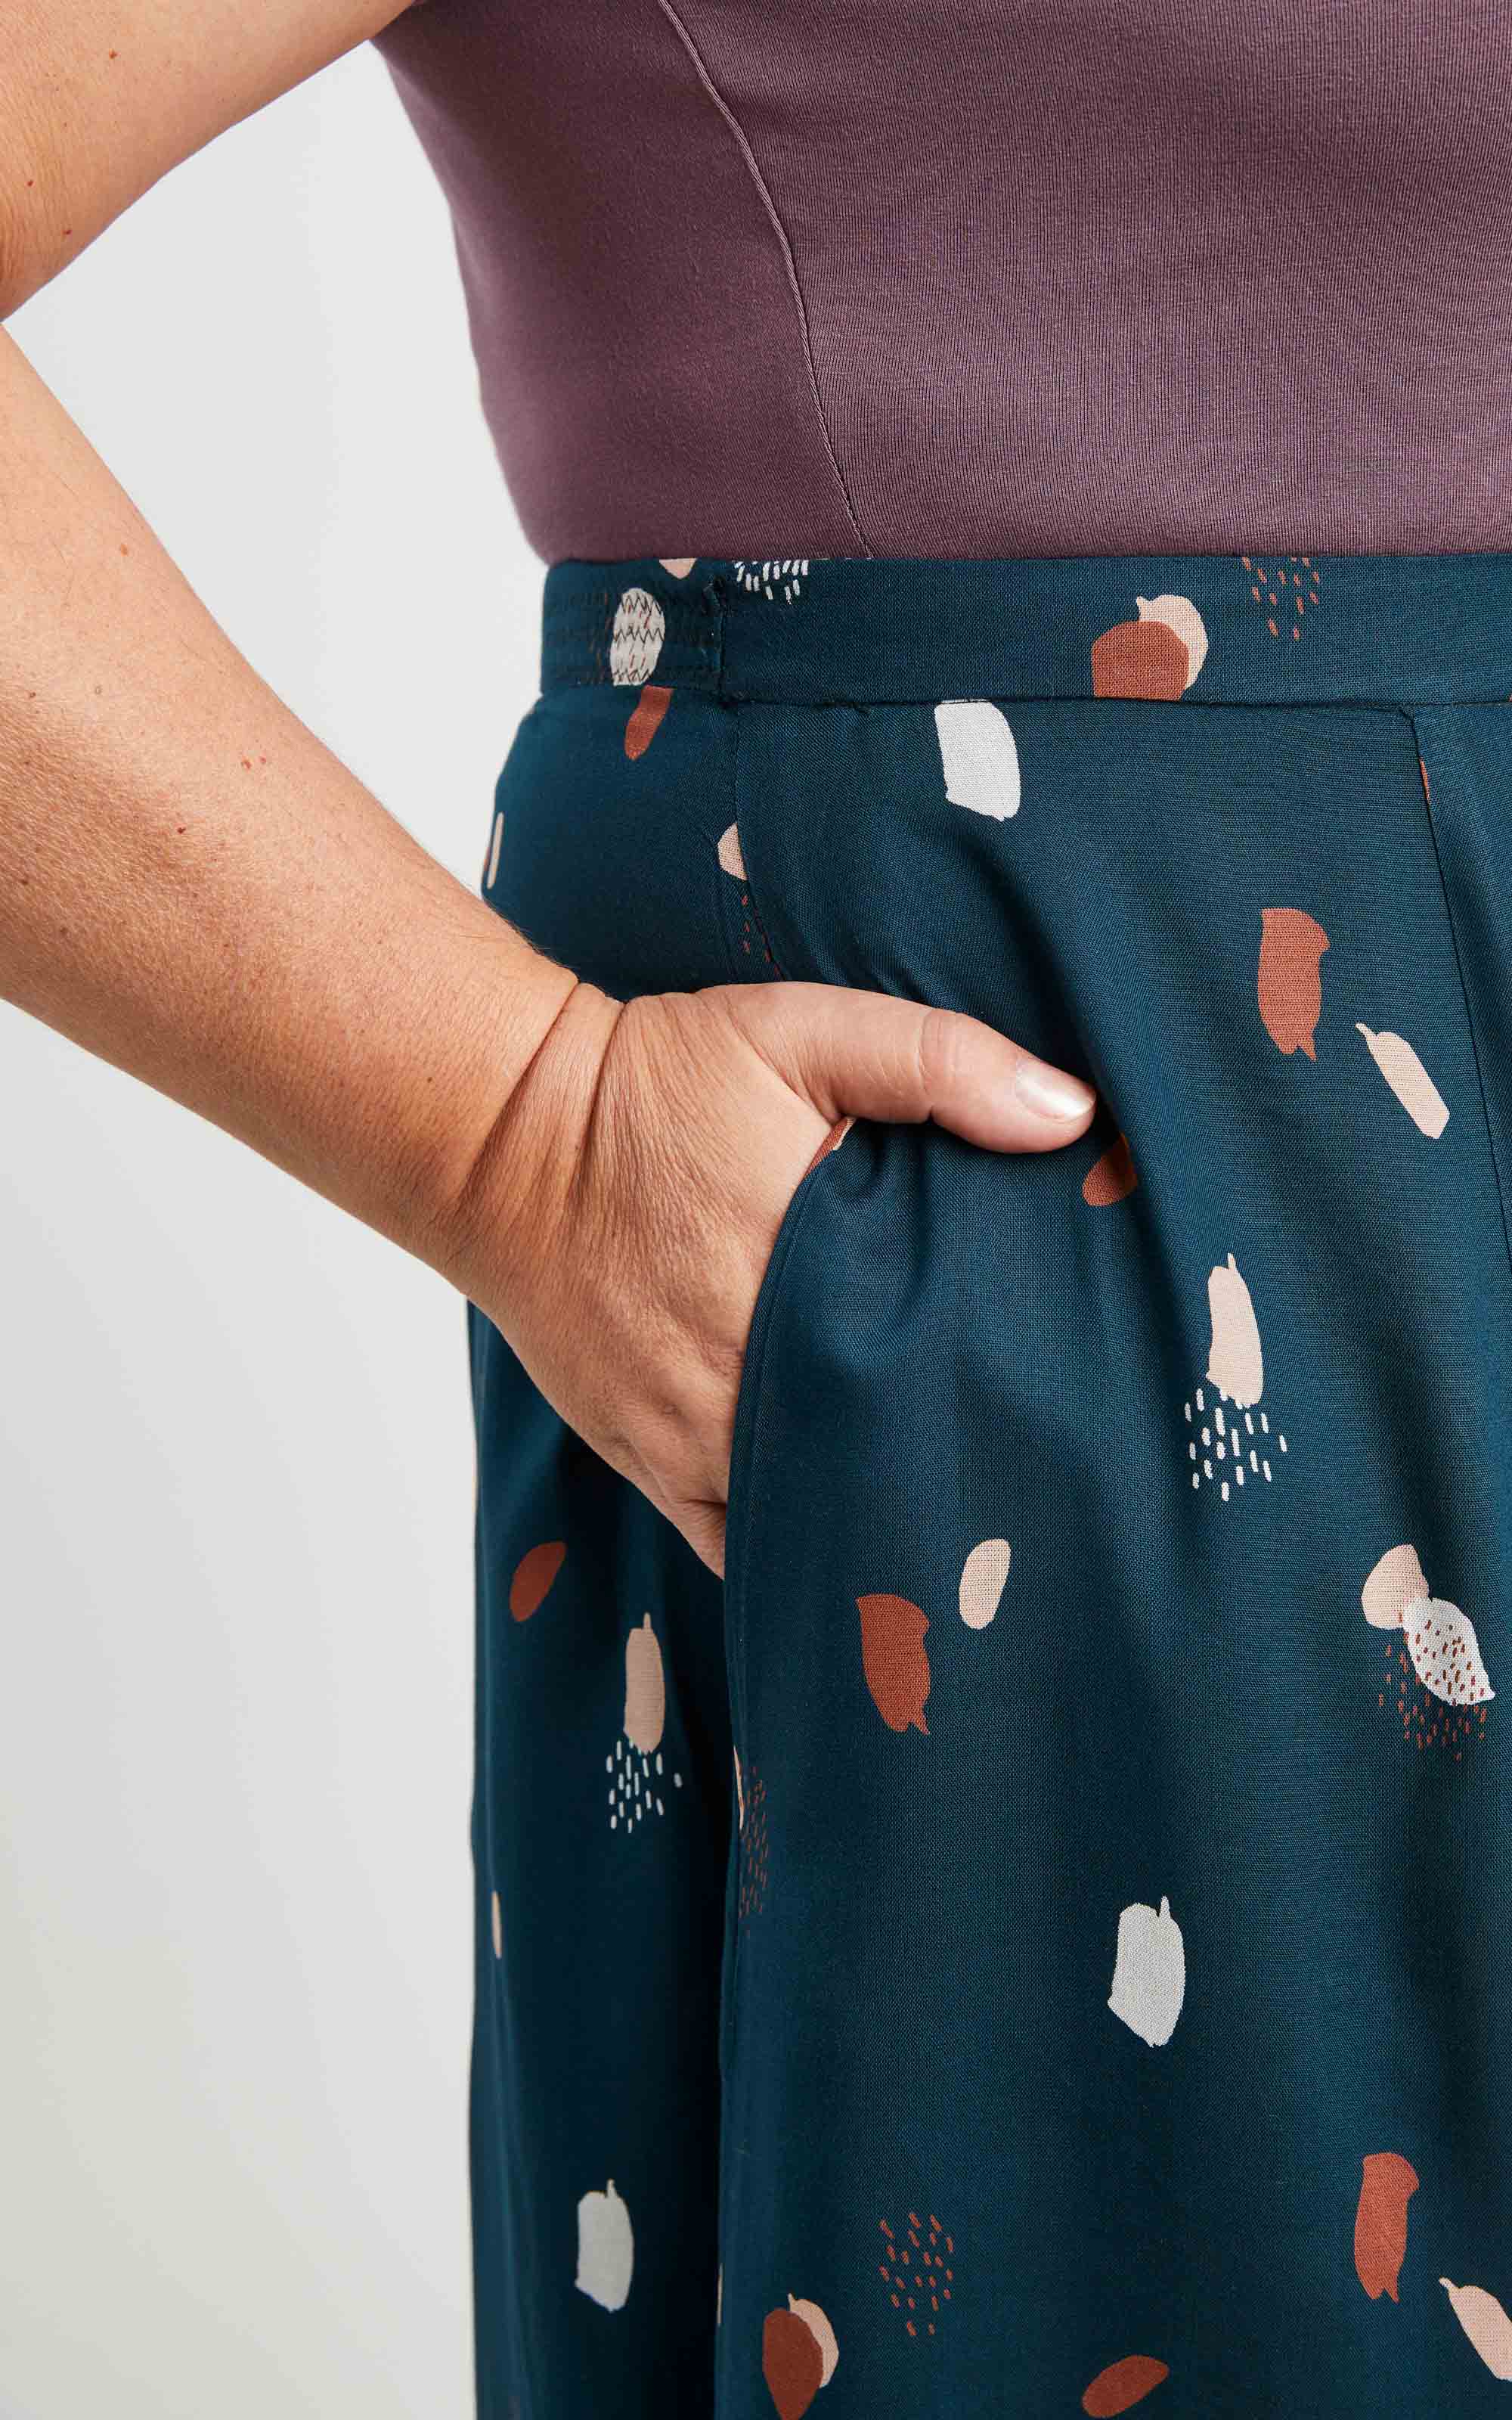 Cashmerette Holyoke Maxi Dress and Skirt sewing pattern